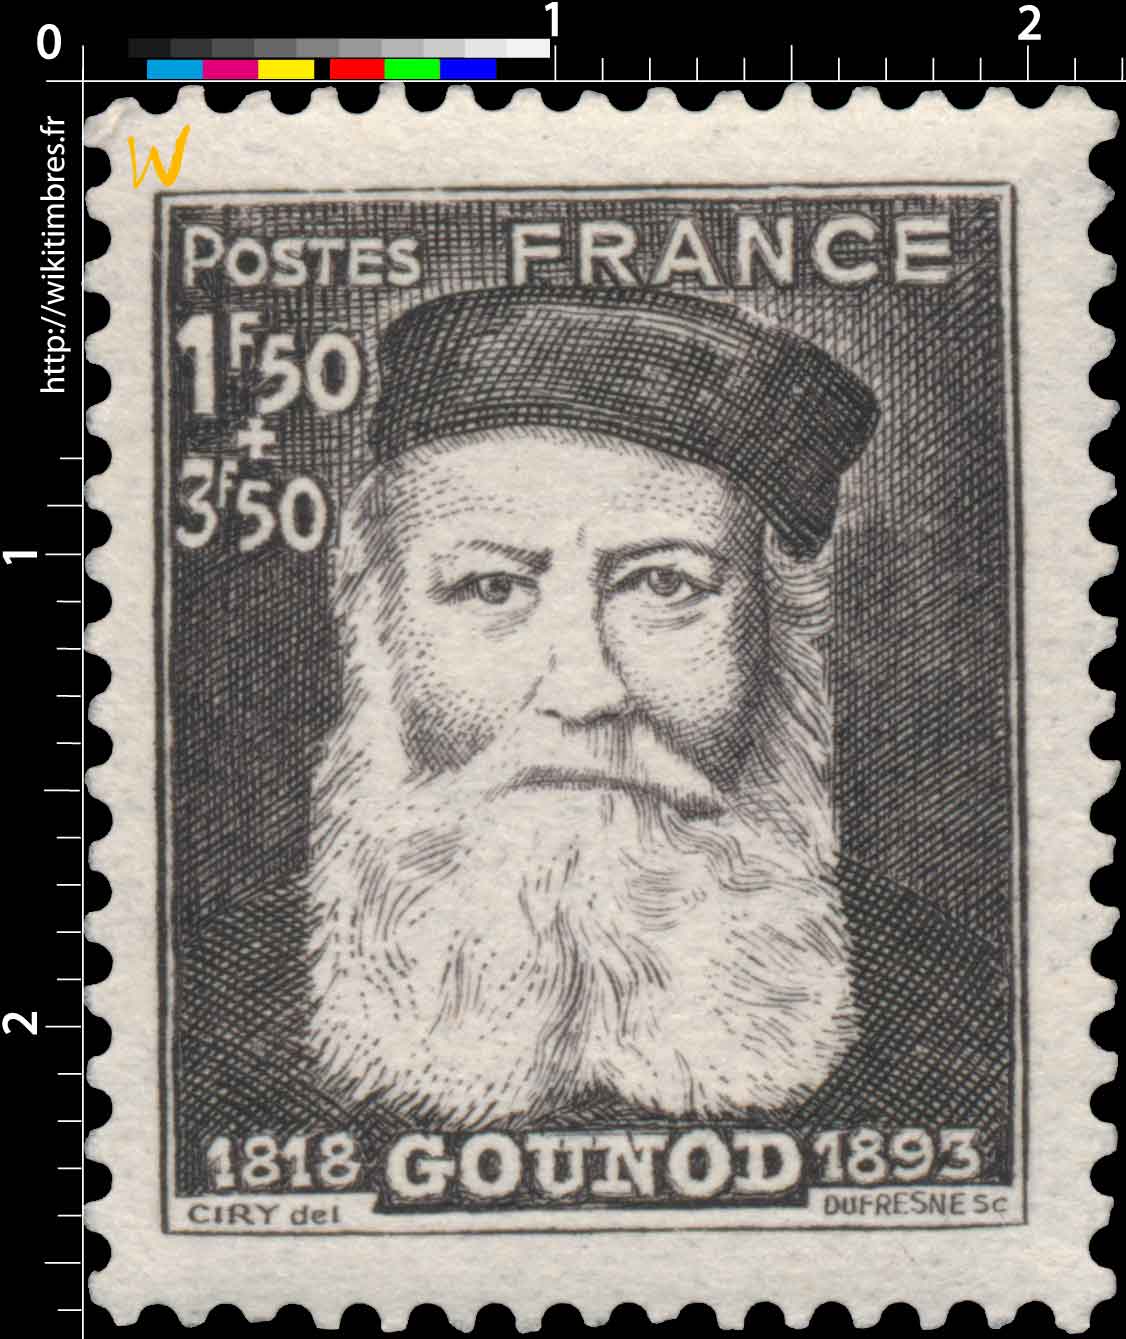 GOUNOD 1818-1893